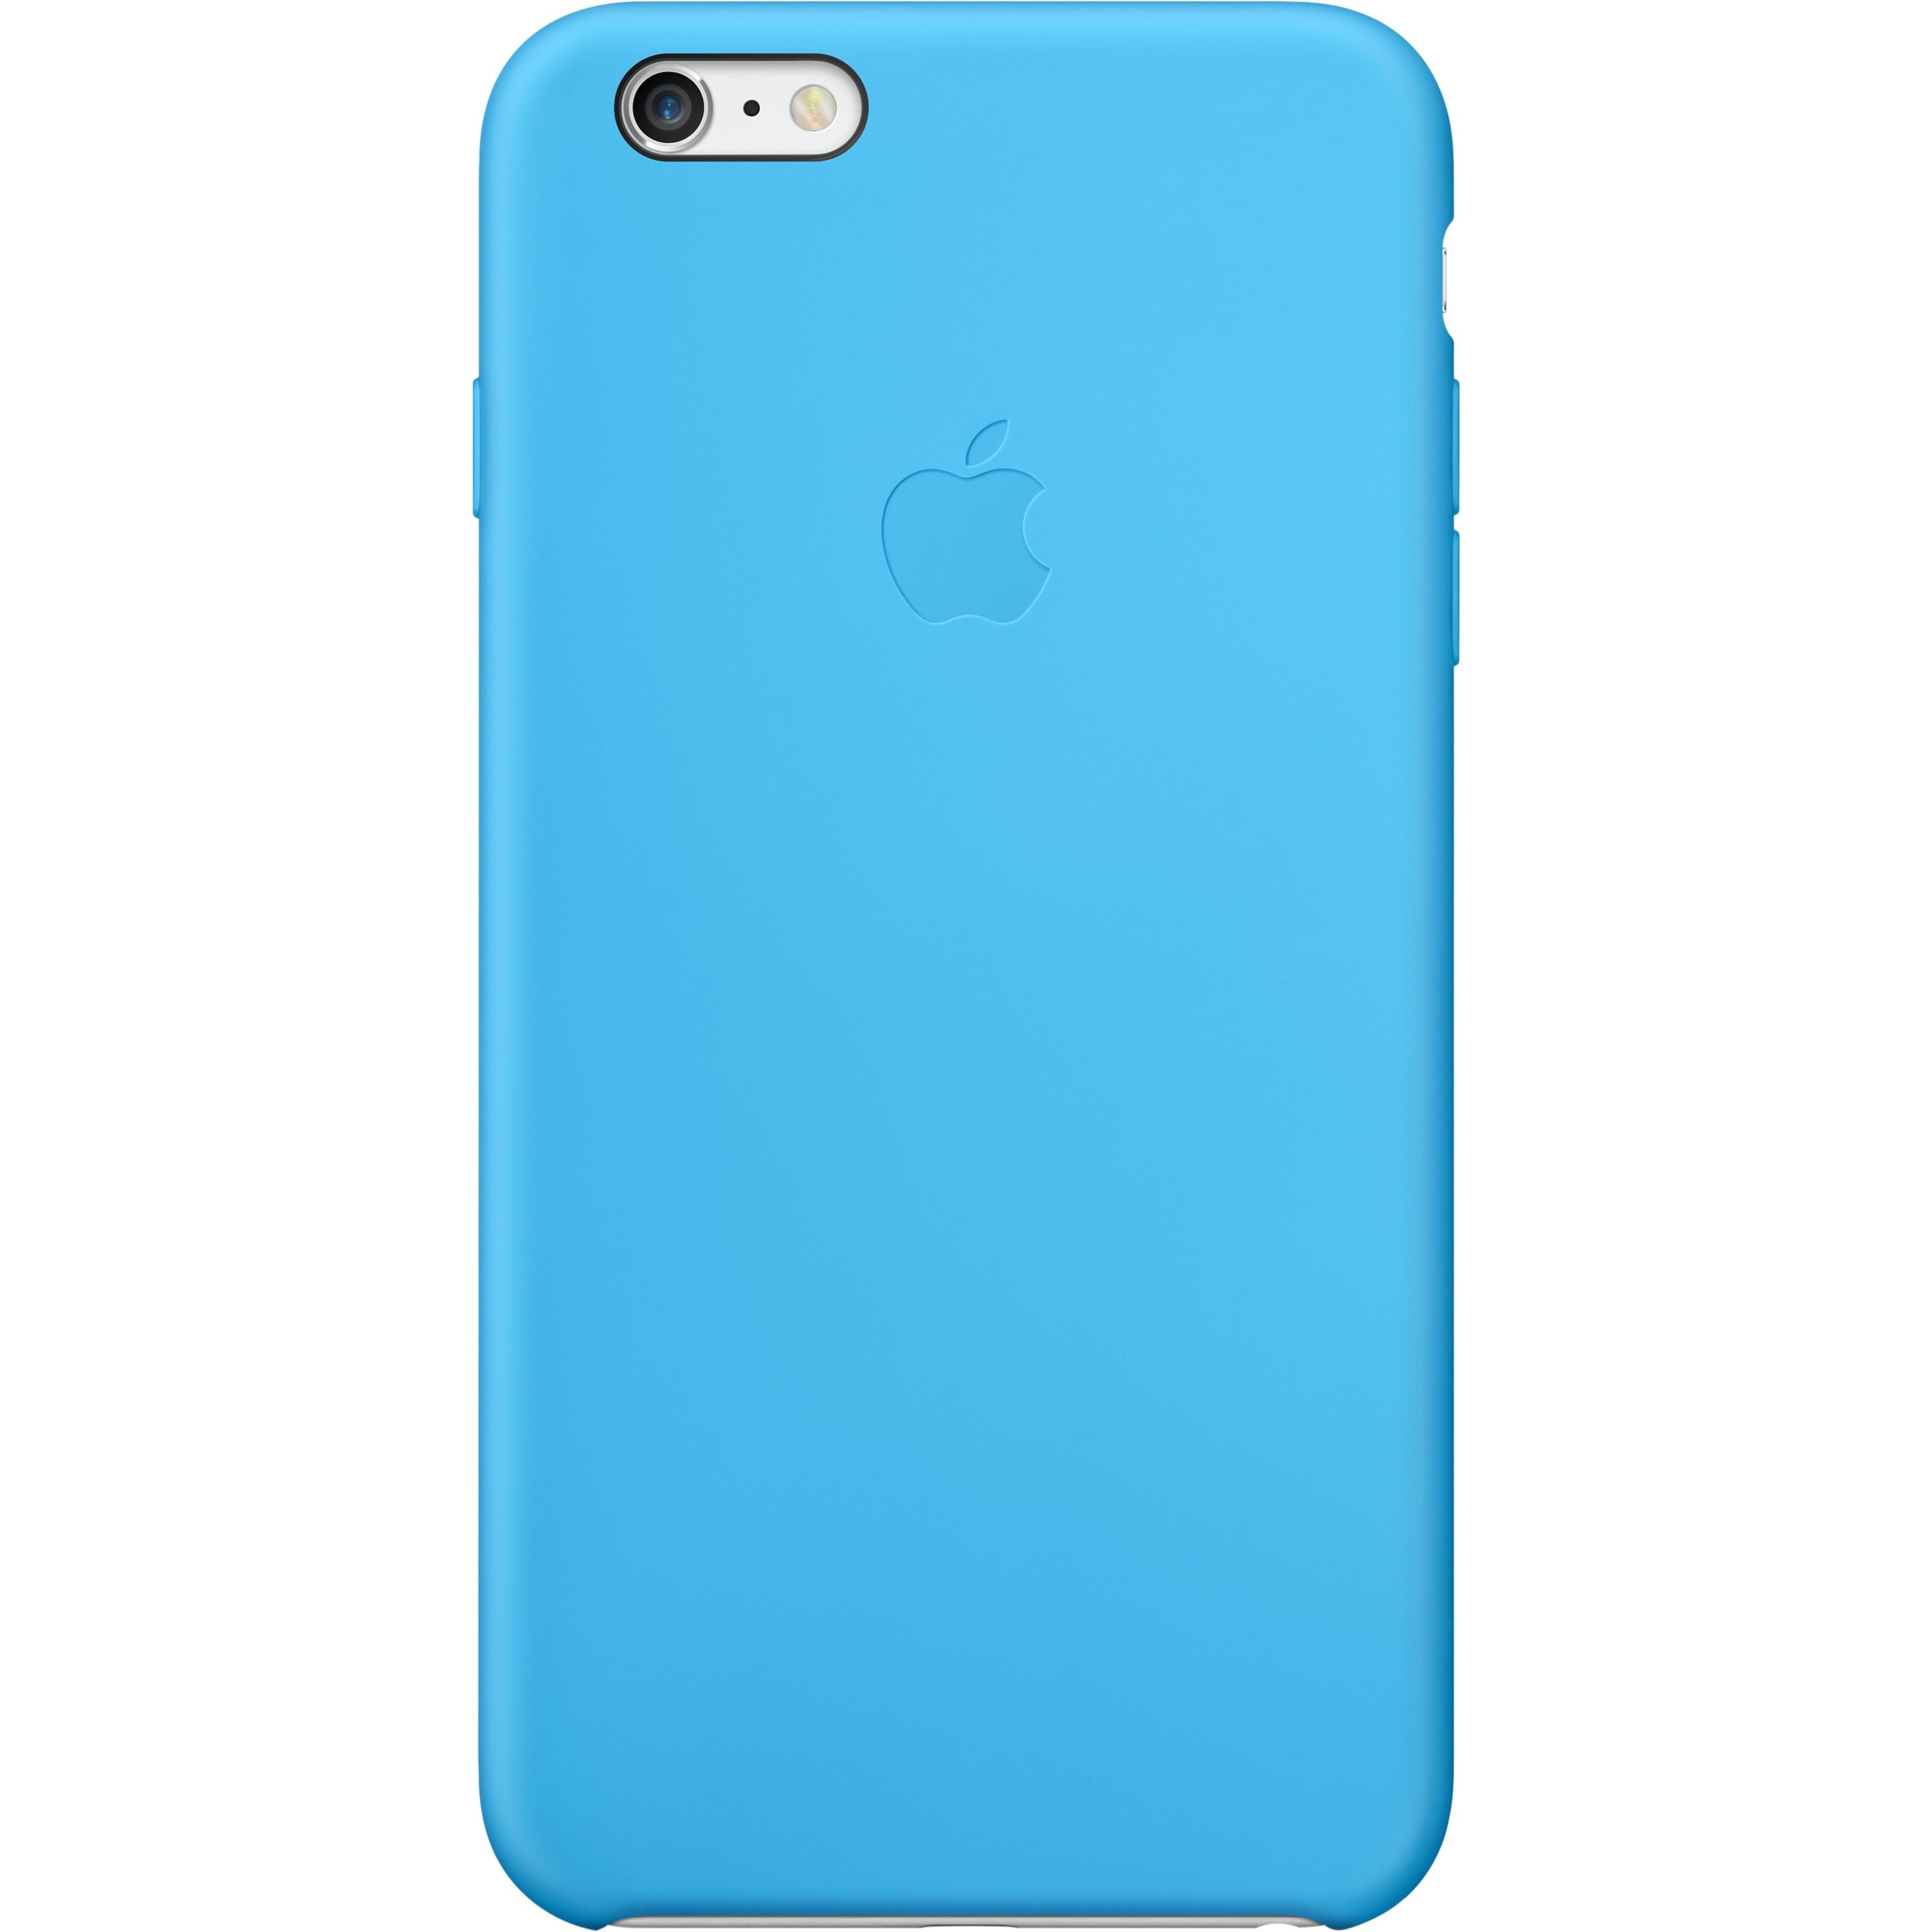 Apple Iphone 6 Plus Silicone Case Blue Walmart Com